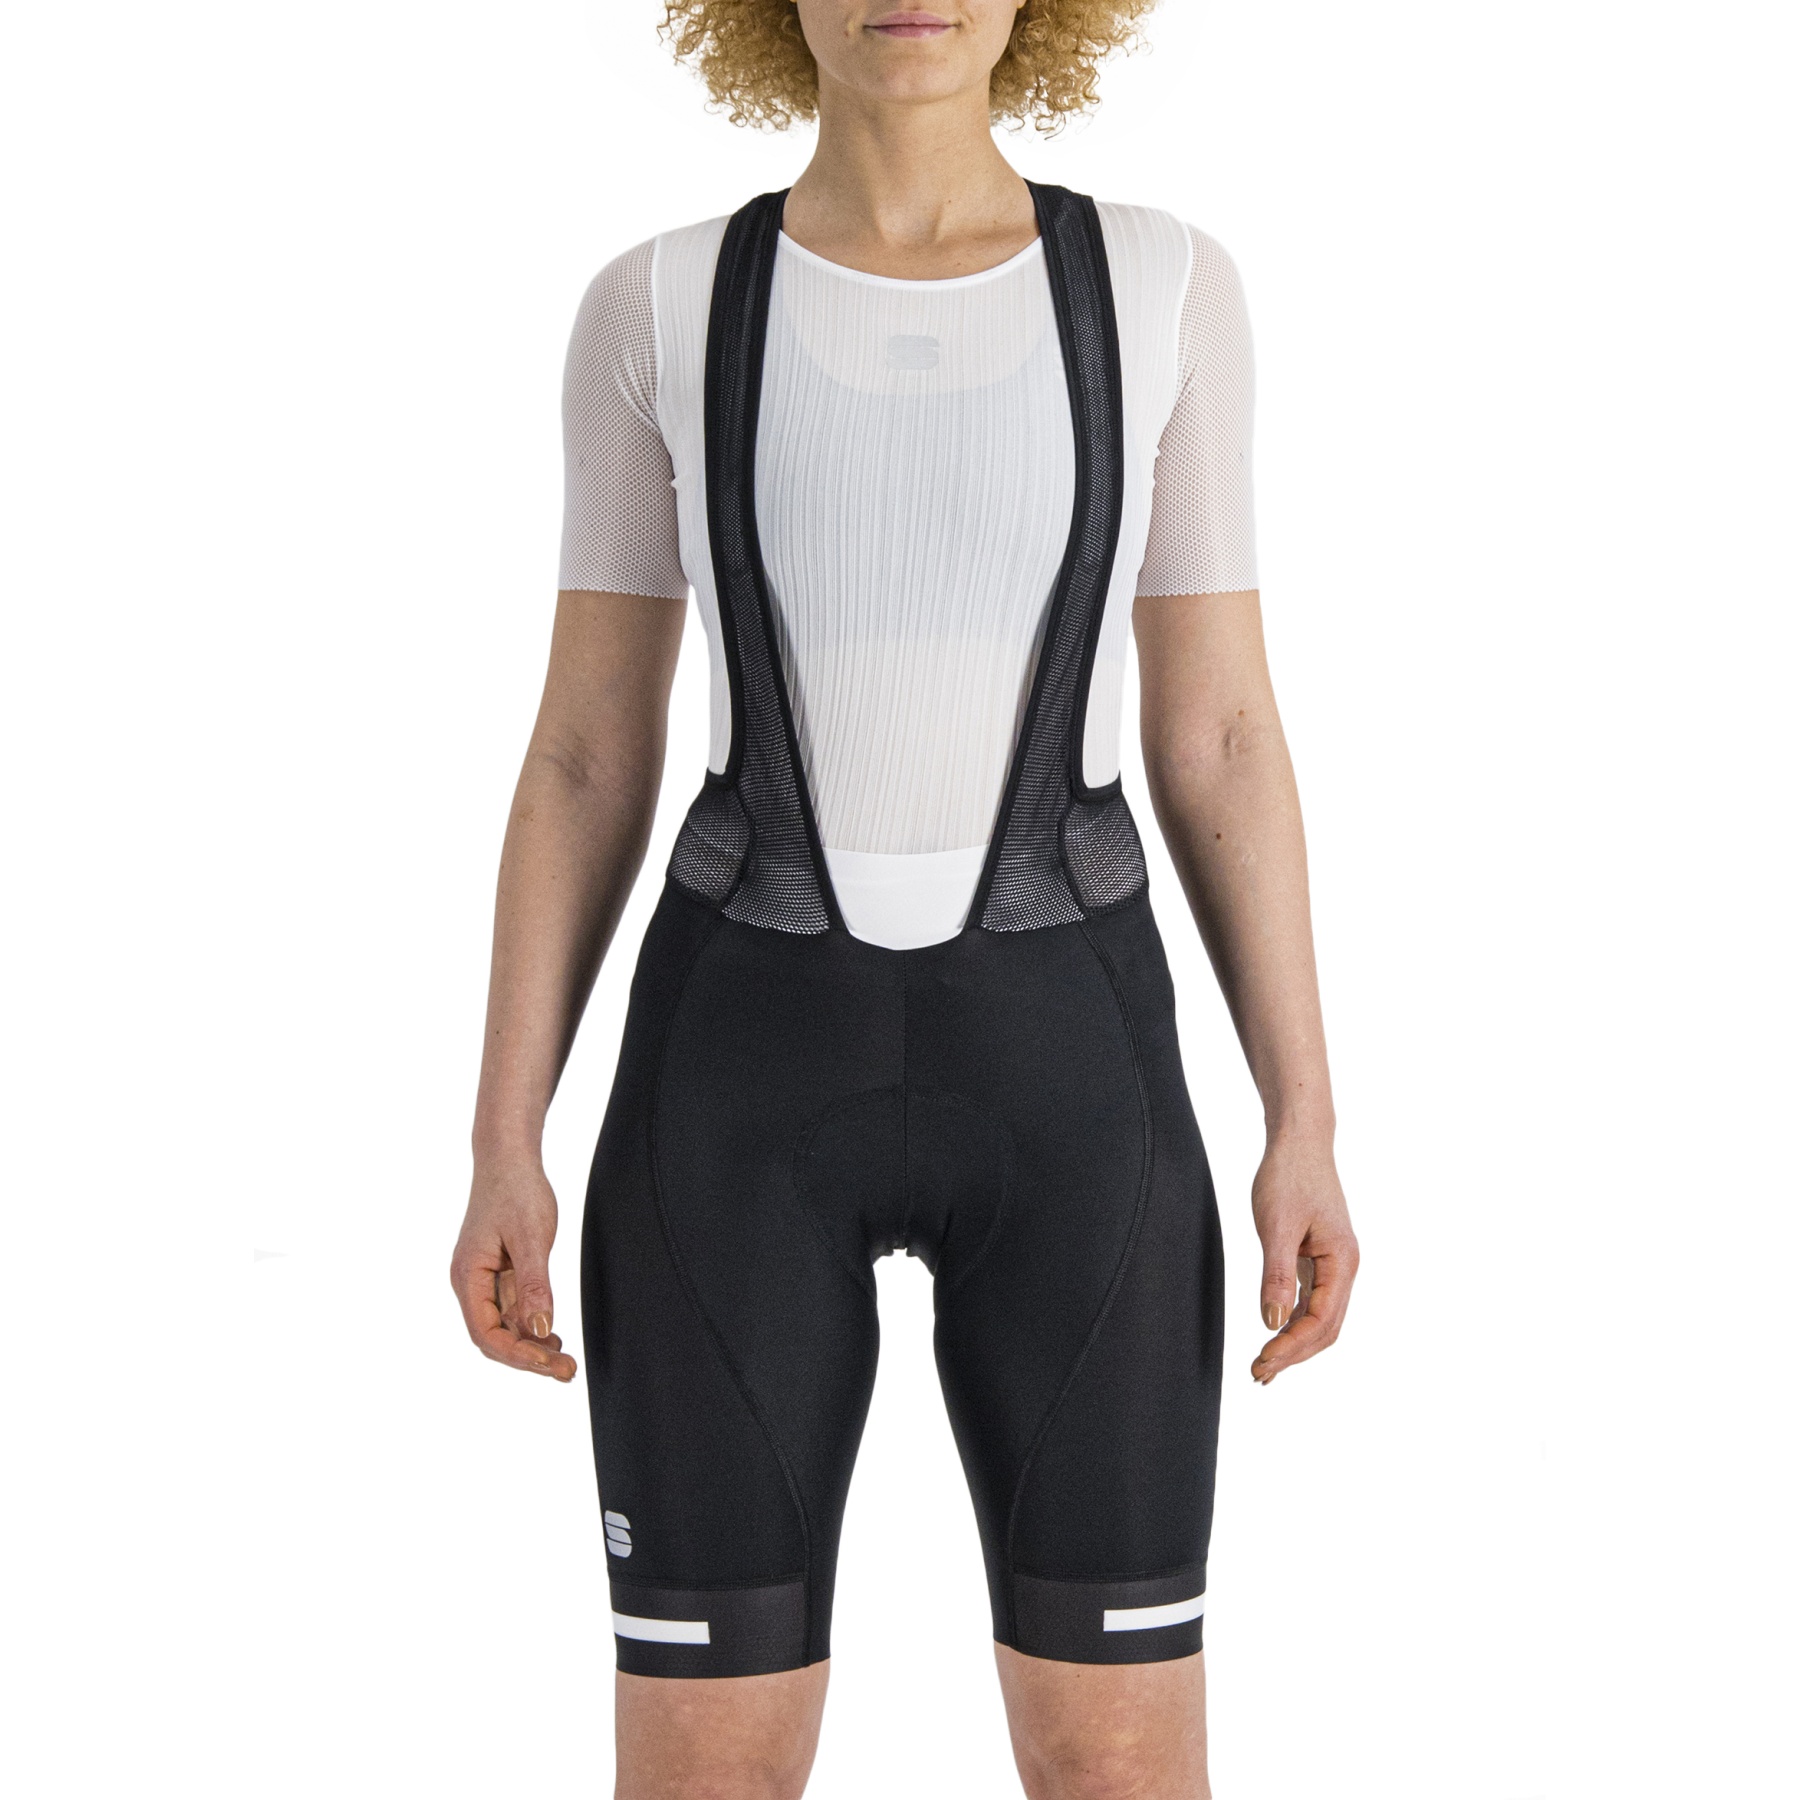 Produktbild von Sportful Neo Damen Trägershorts - 101 Schwarz/Weiß